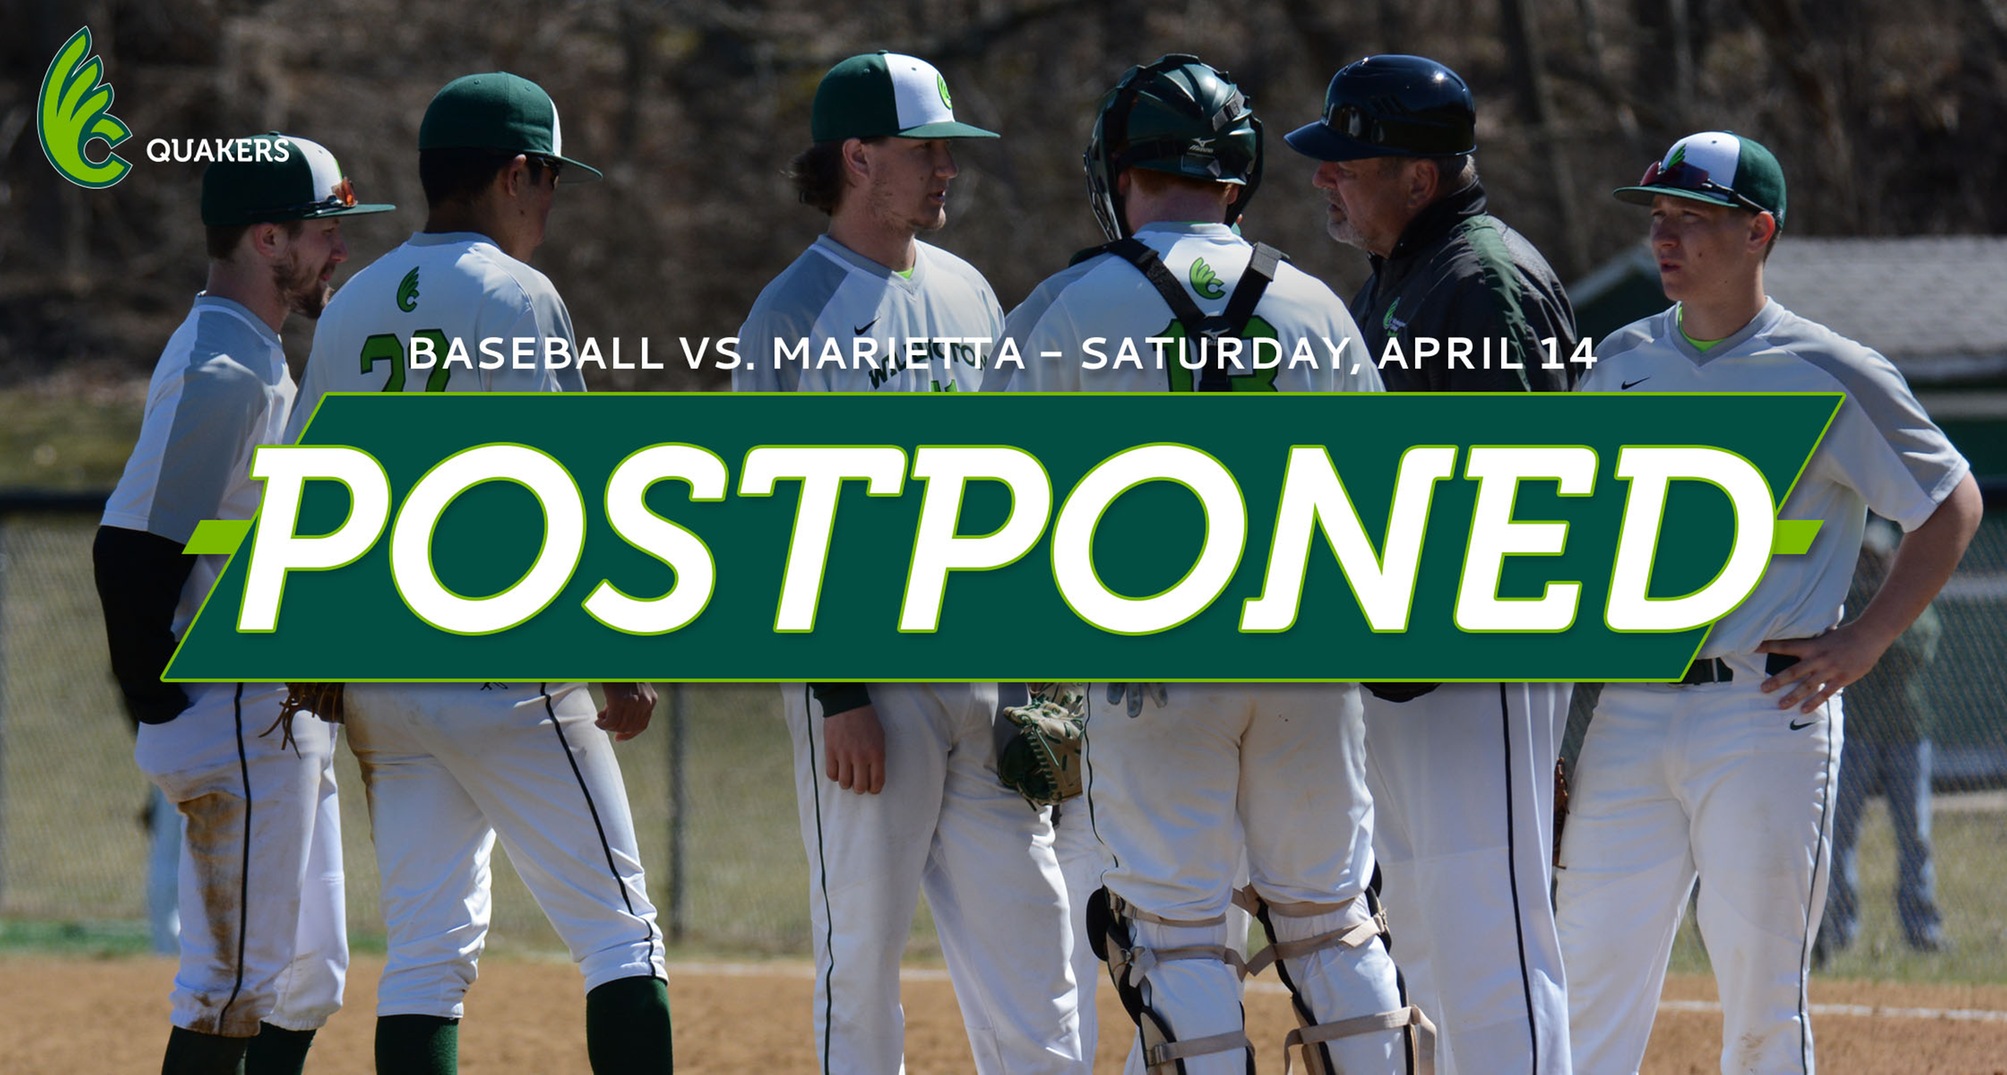 Baseball's Series With Marietta Postponed